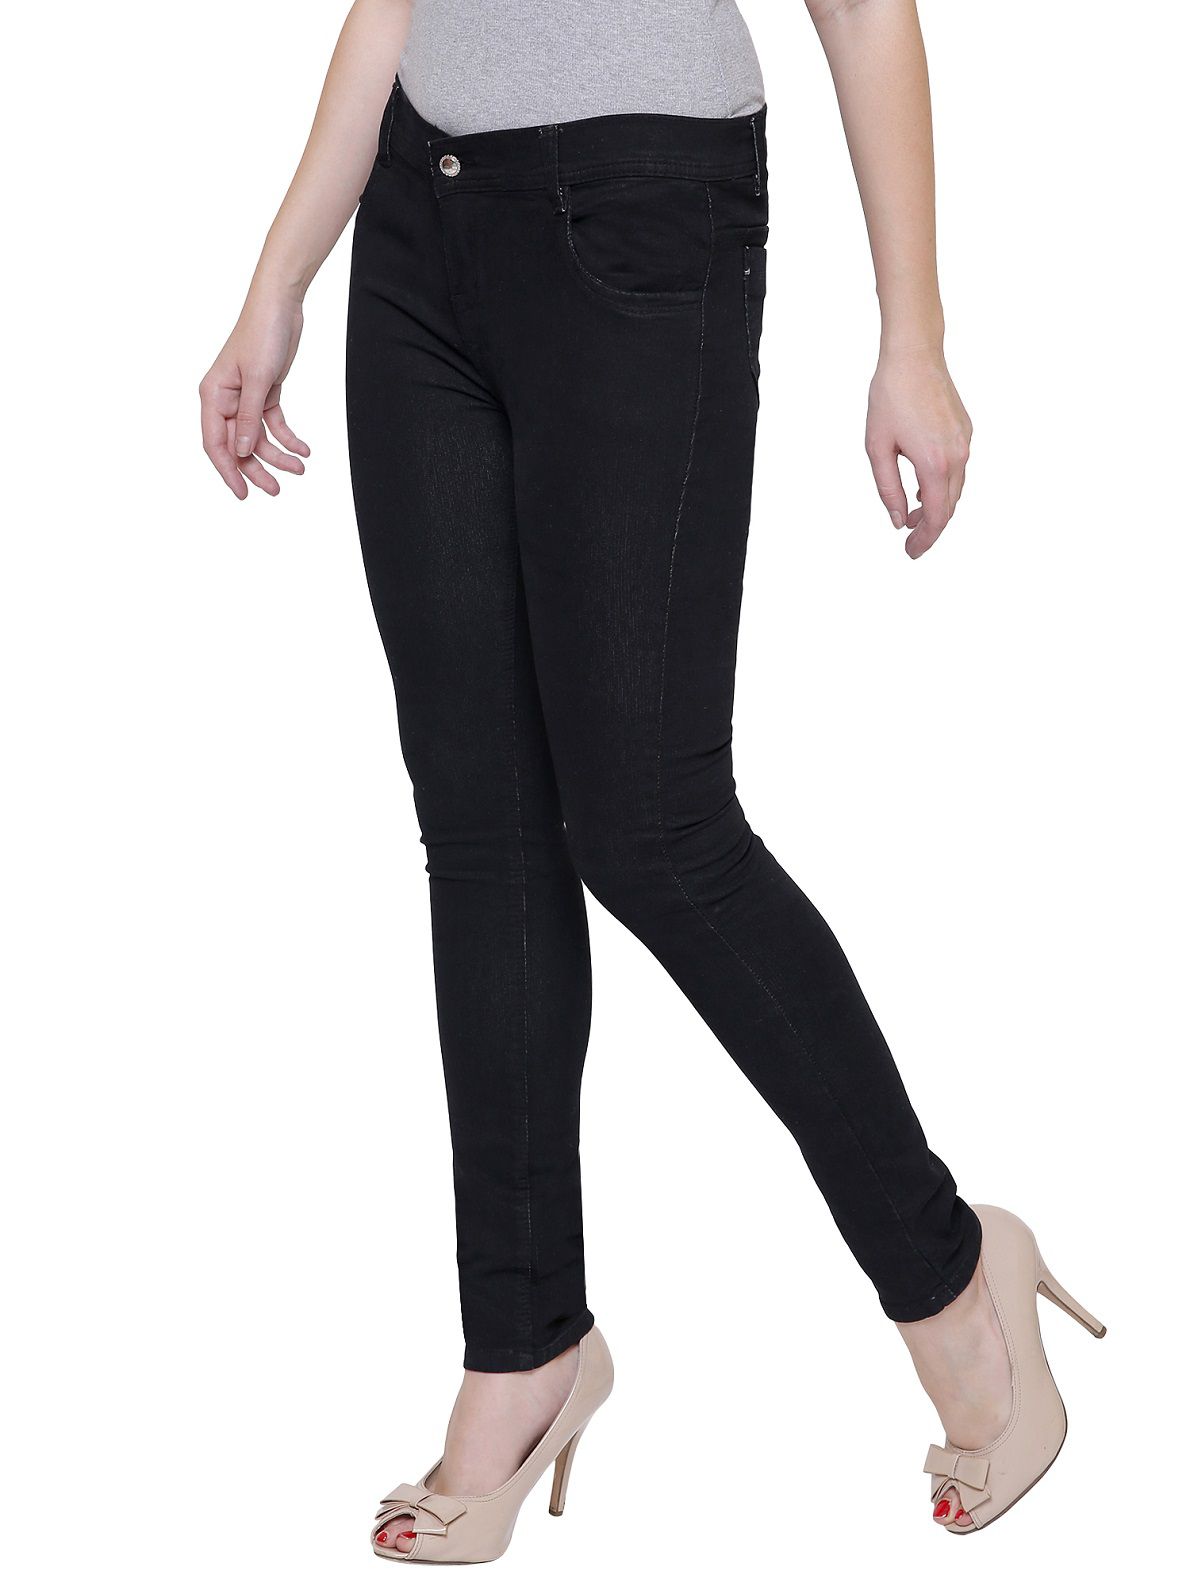 Nj's Denim Jeans - Black - Buy Nj's Denim Jeans - Black Online at Best ...